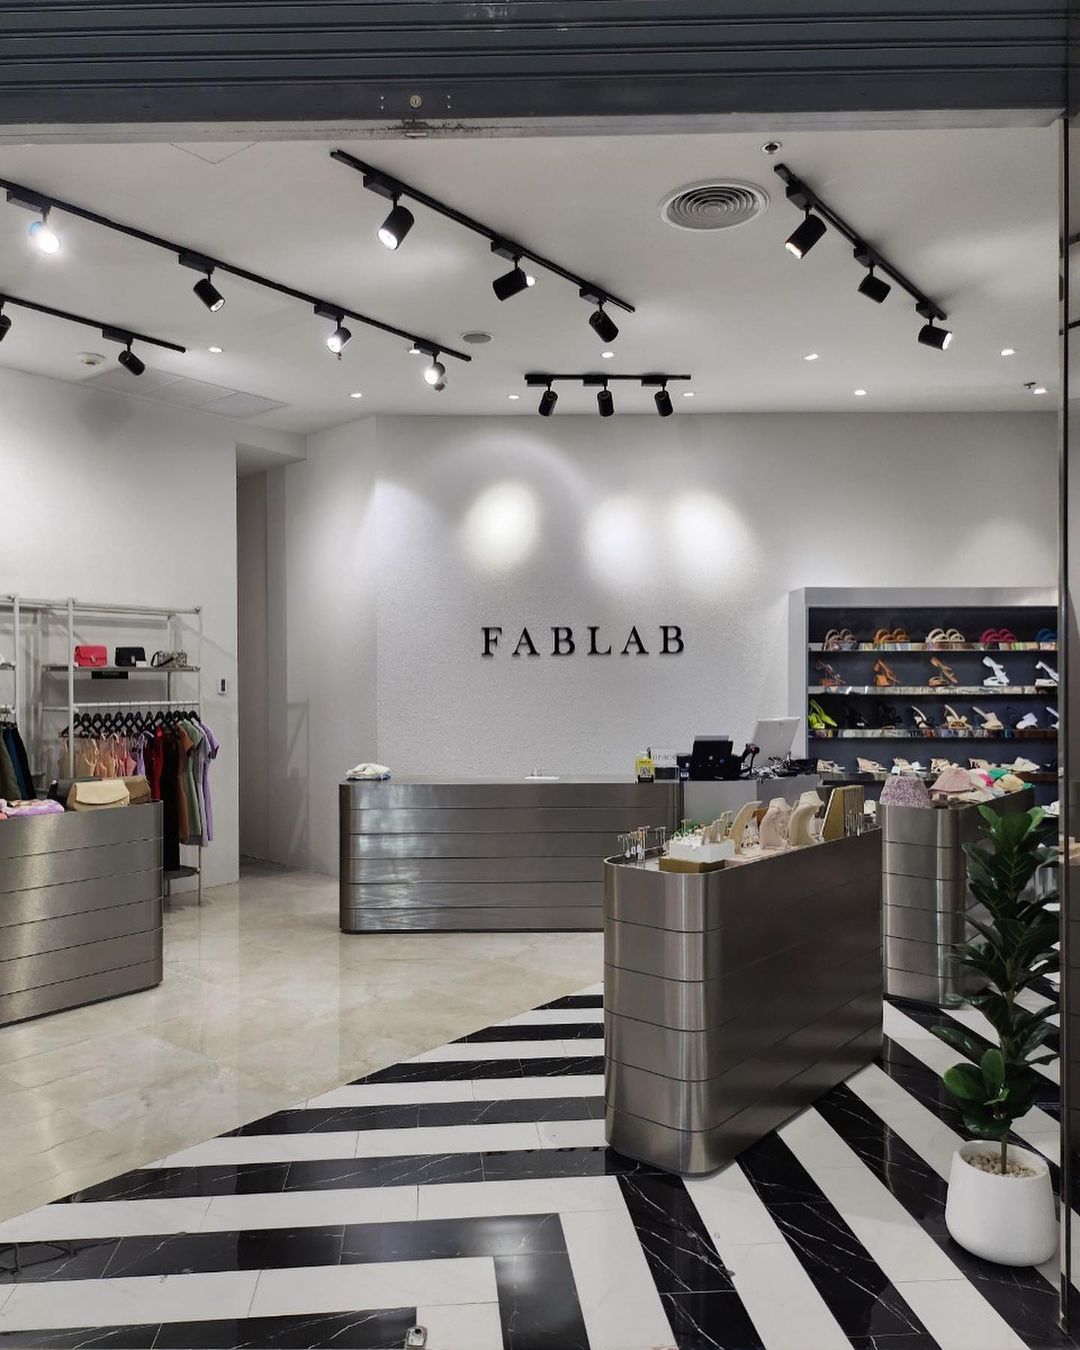 FABLAB-ฝากขายสินค้า-ก่อนที่จะรับ ฝากขายสินค้า ร้านค้าควรจะรู้อะไรบ้าง